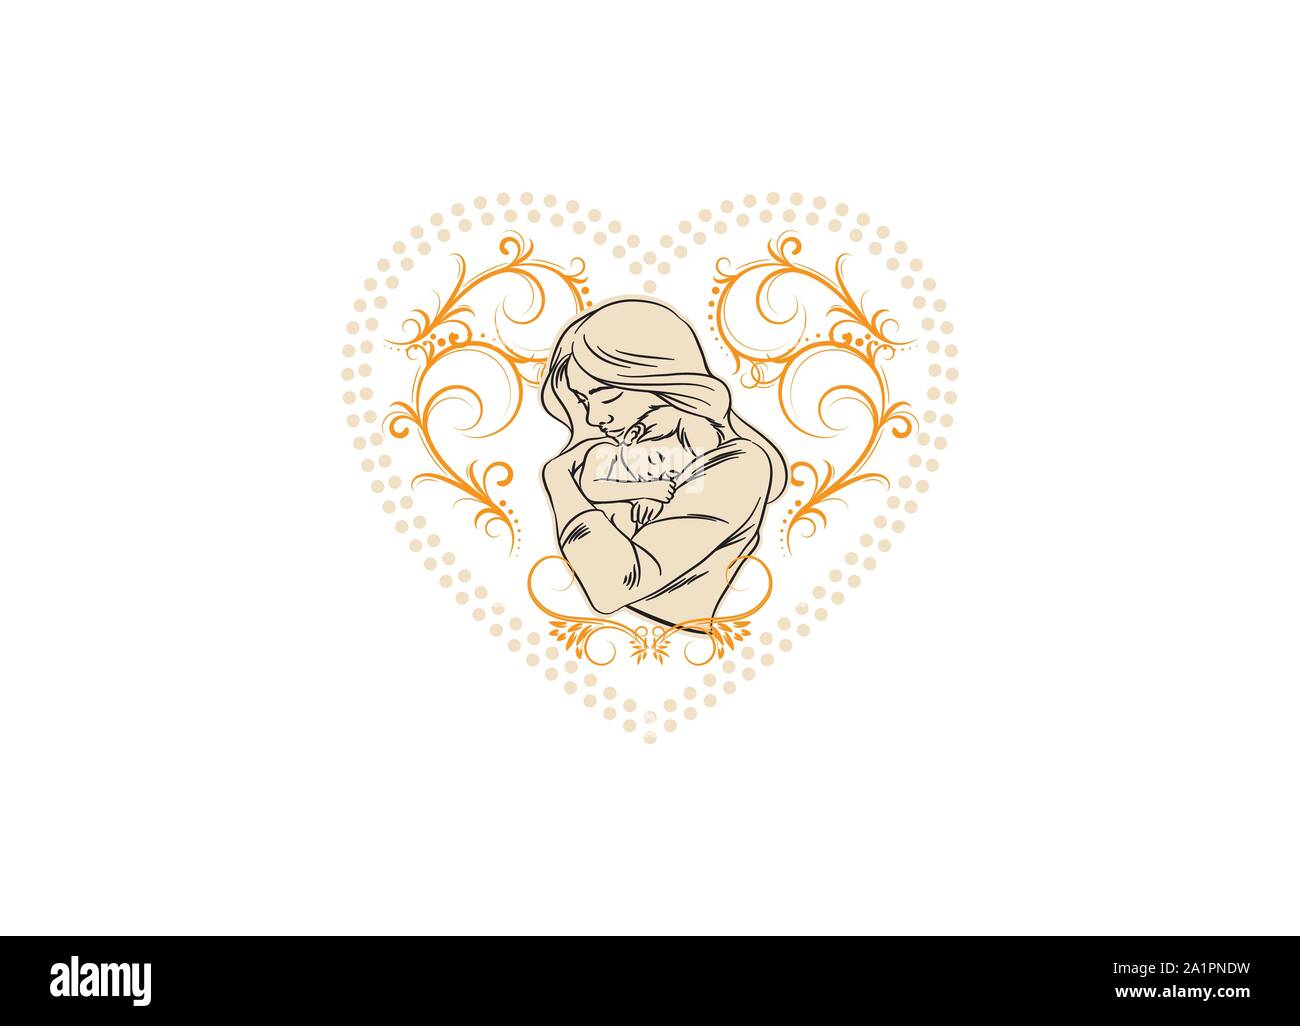 Forme de coeur mère modèle vecteur de conception de logo. Icône Motherlove, logos de la maternité, maman coeur love logo, la mère et l'enfant, symbole vecteur stylisé Illustration de Vecteur